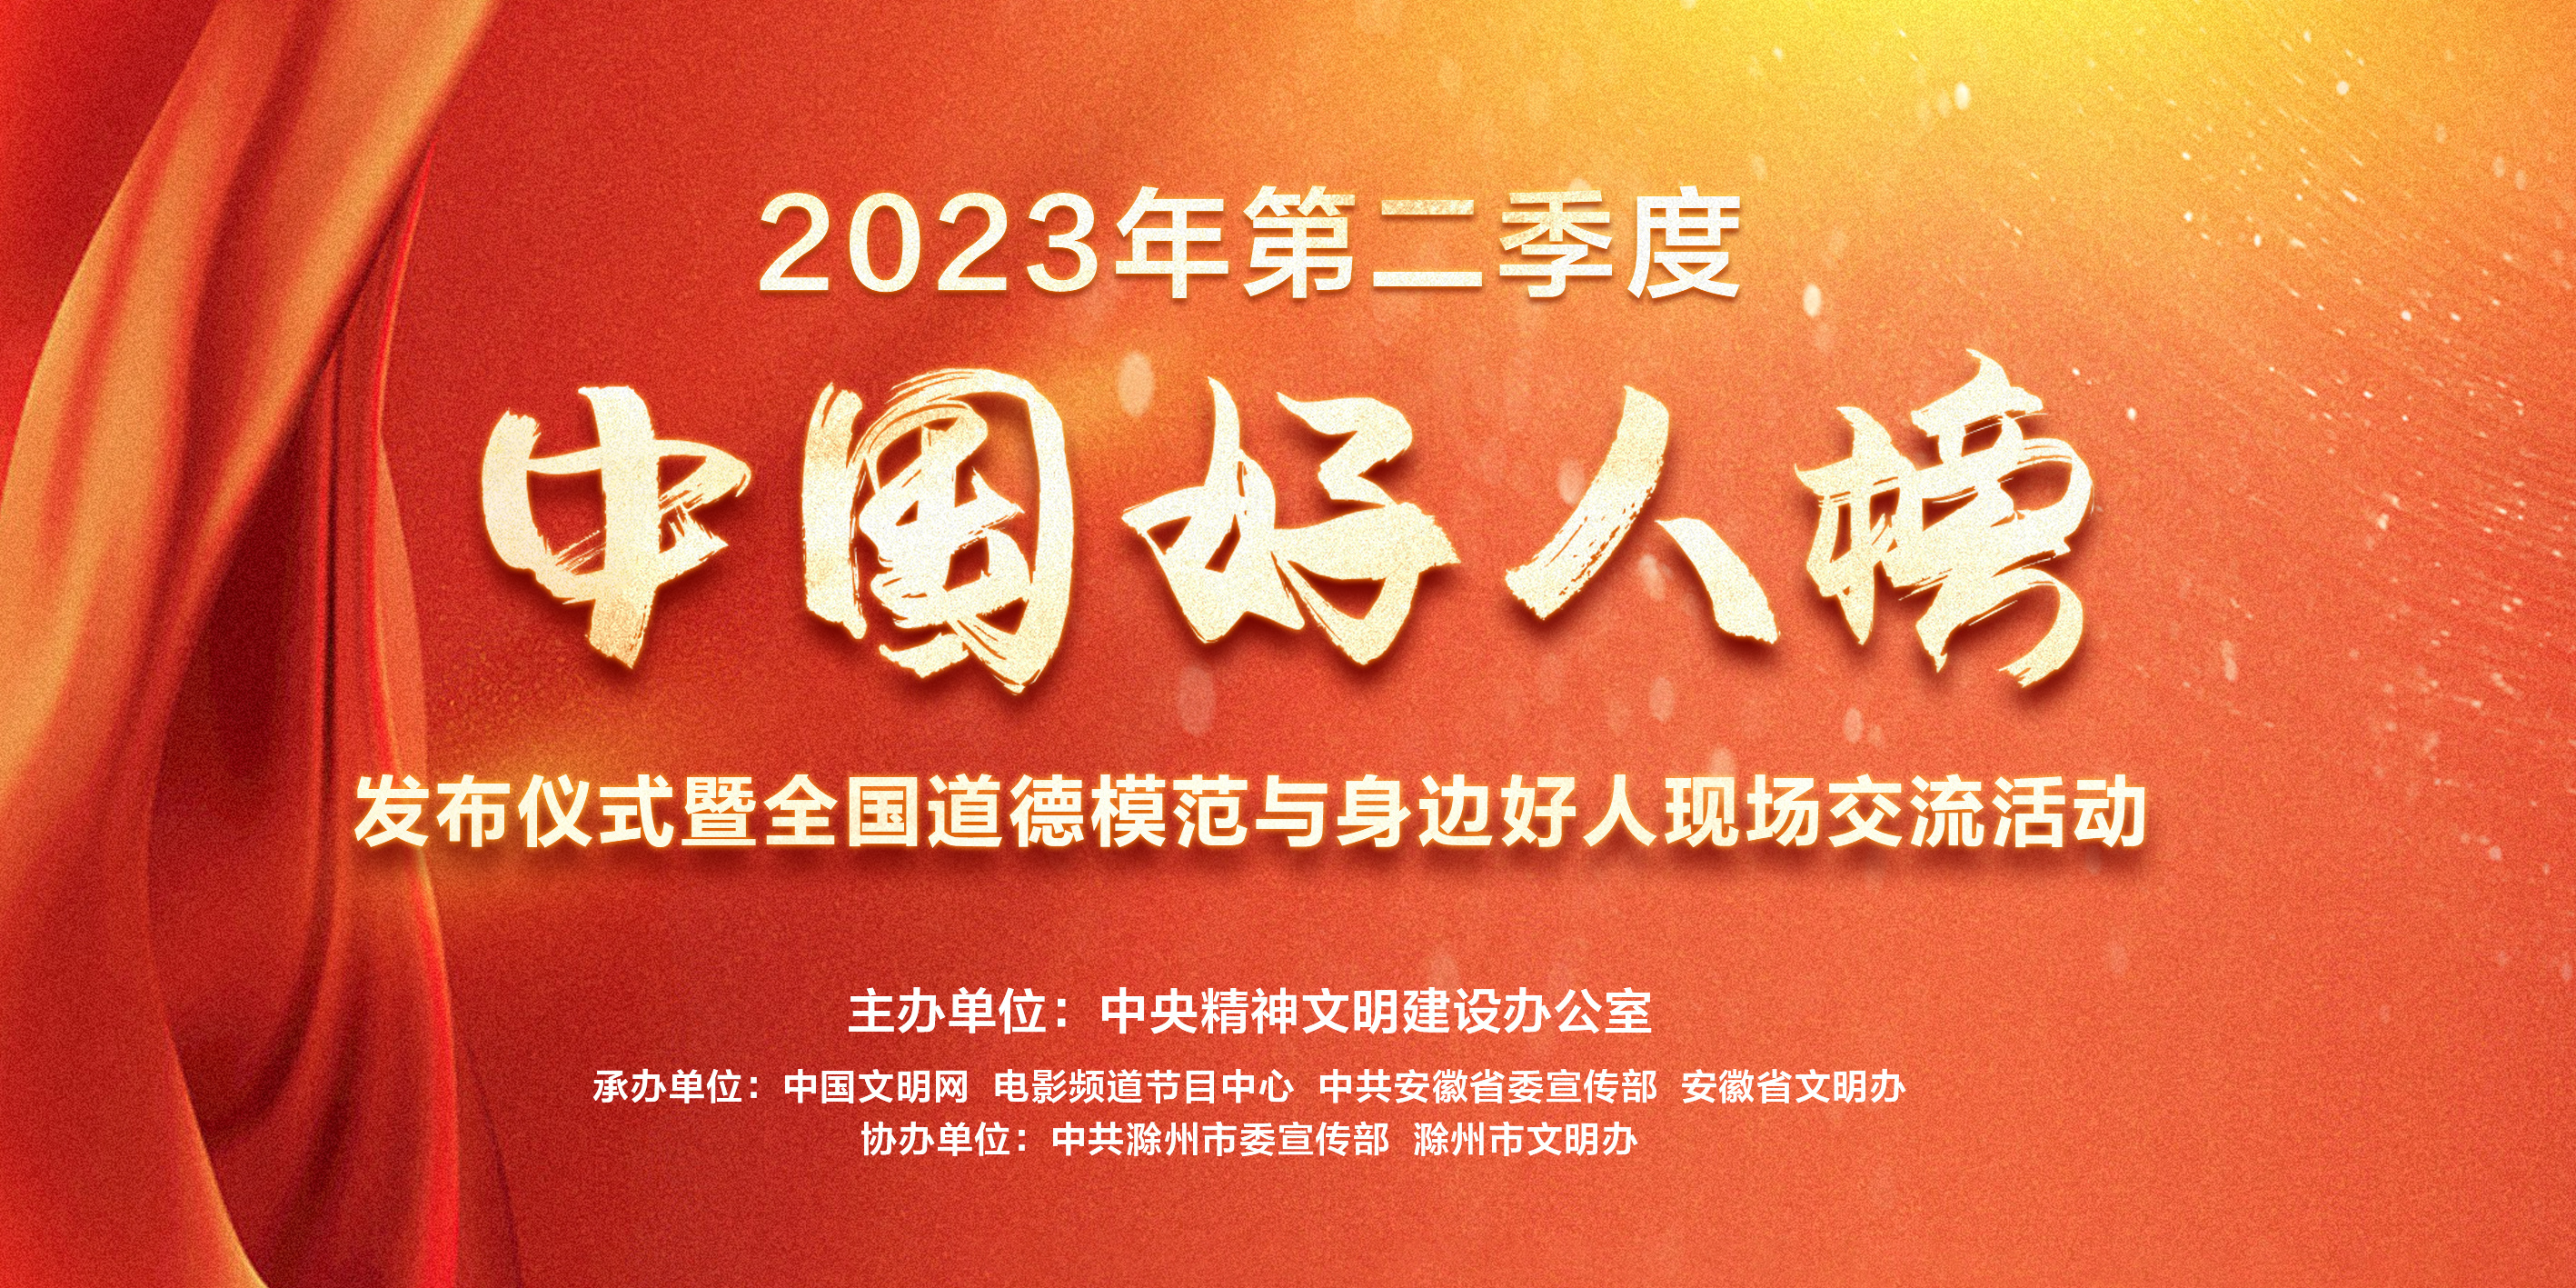 2023年第二季度中国好人榜在9月22日电影频道直播